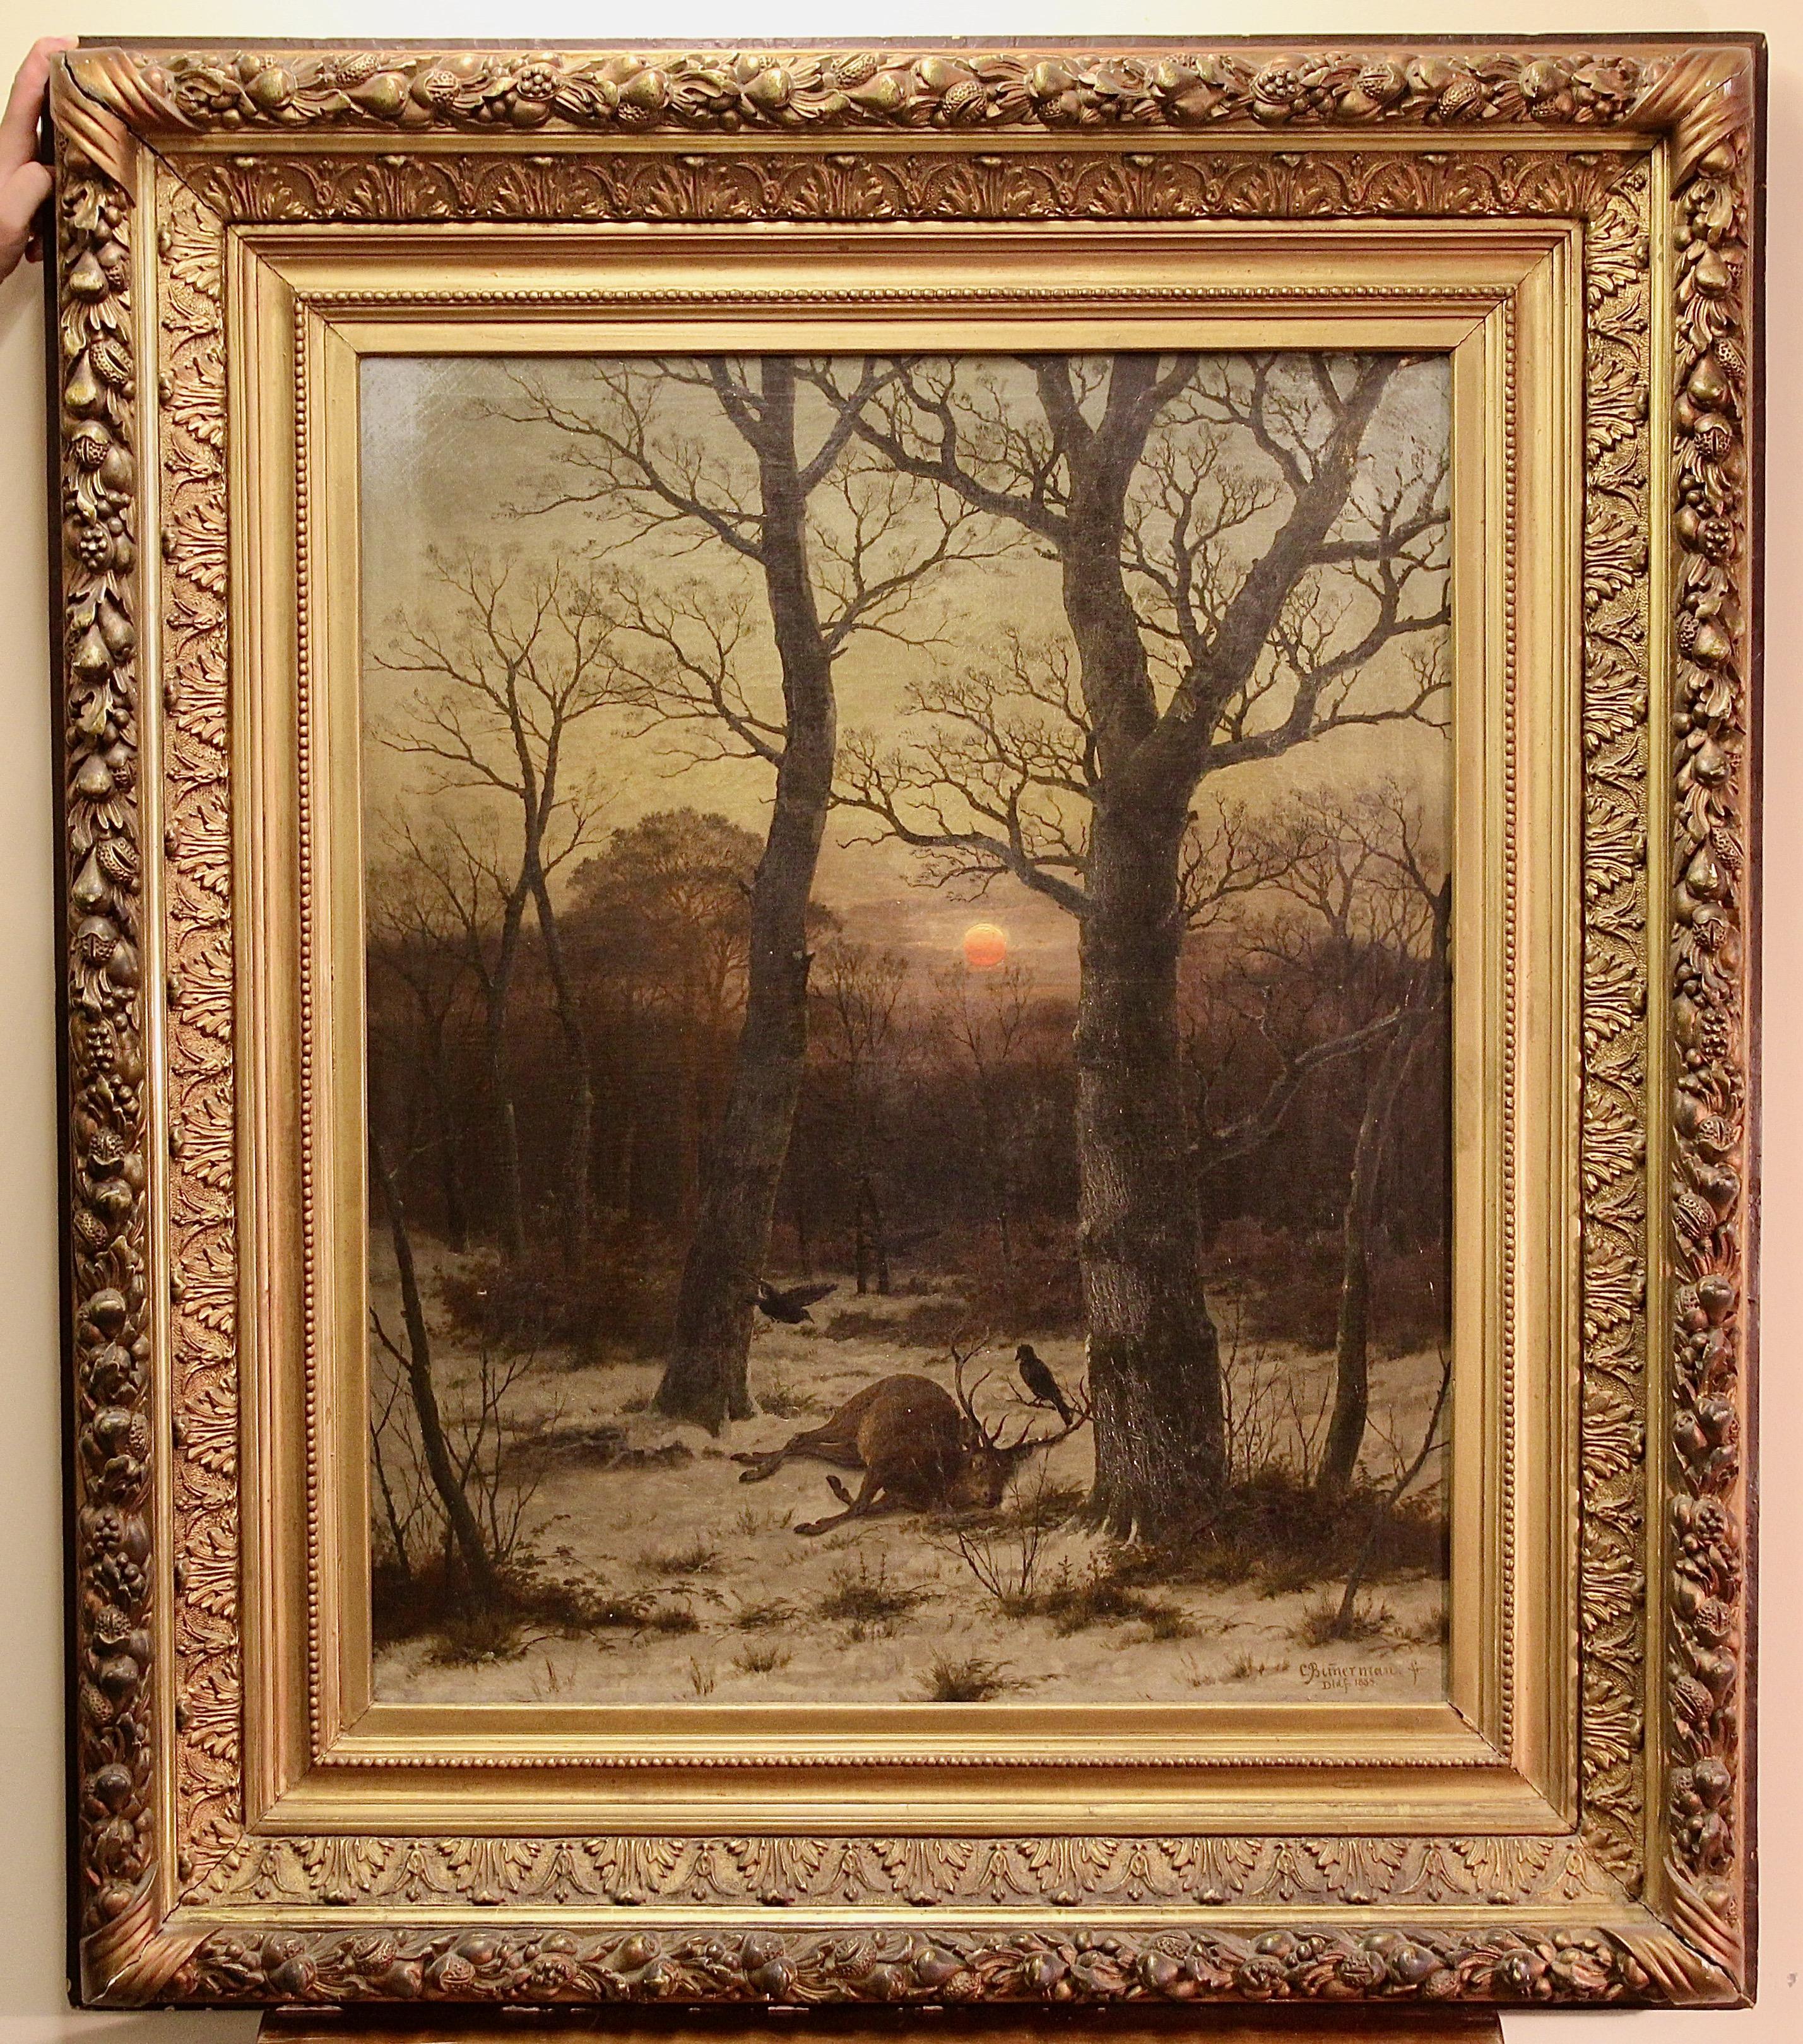 Peinture à l'huile, Caeser Bimmermann, 1885. Paysage d'hiver en neige avec cerfs. - Painting de Peter Franz Caesar Bimmermann